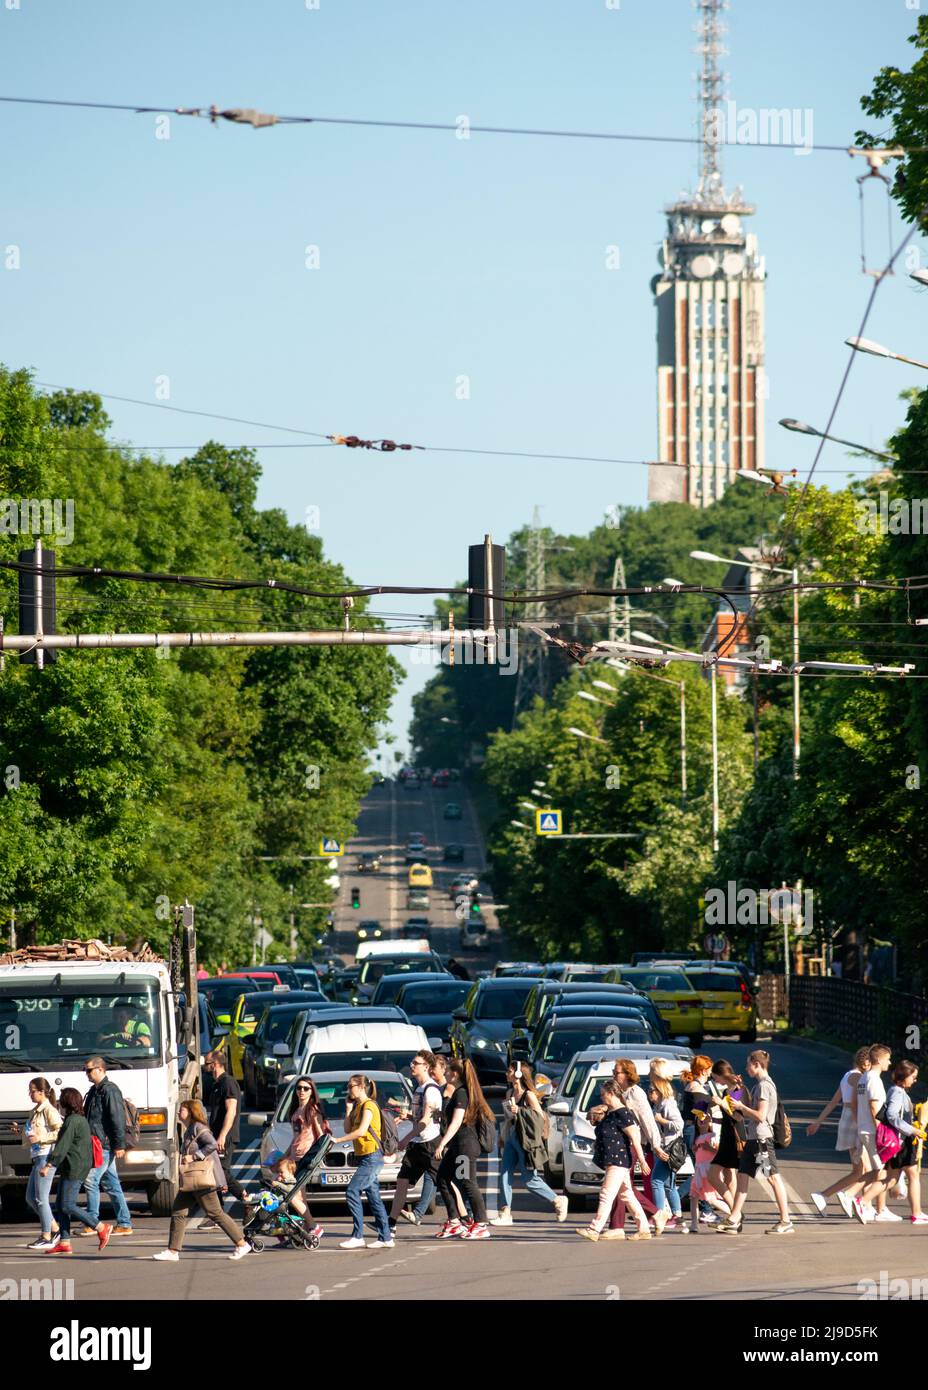 Menschen, die während der Hauptverkehrszeit an Ampeln in der Innenstadt von Sofia, Bulgarien, Osteuropa, Balkan und der EU eine belebte Straße überqueren Stockfoto